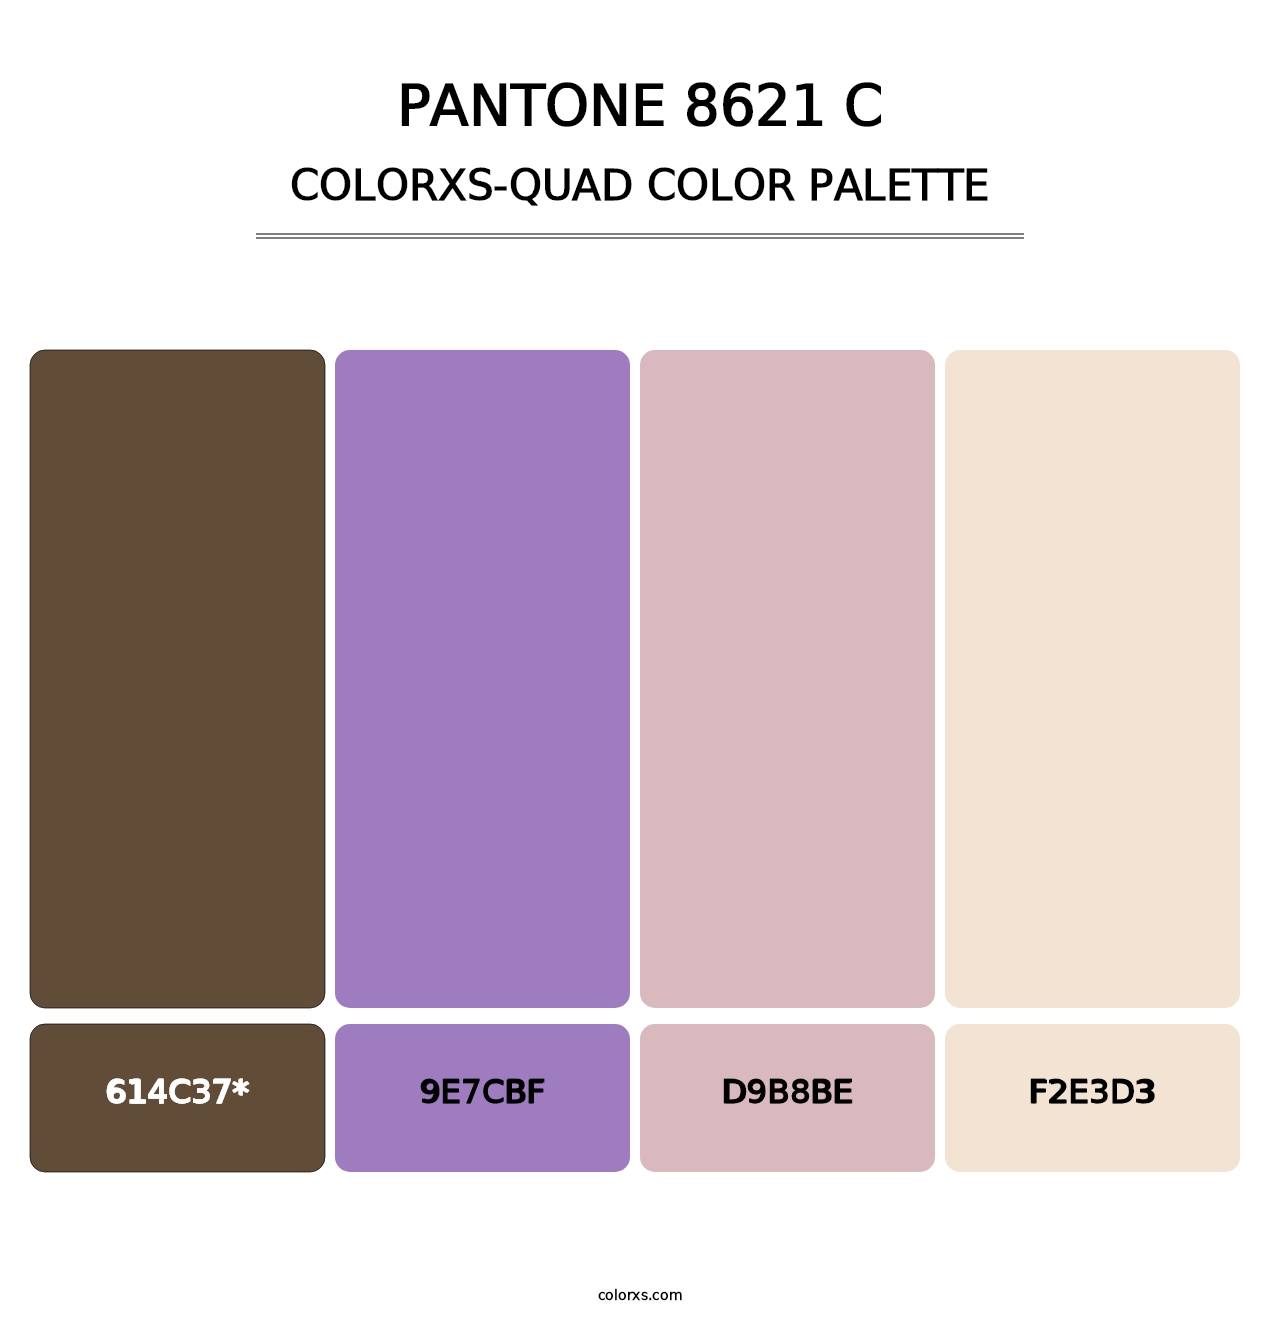 PANTONE 8621 C - Colorxs Quad Palette